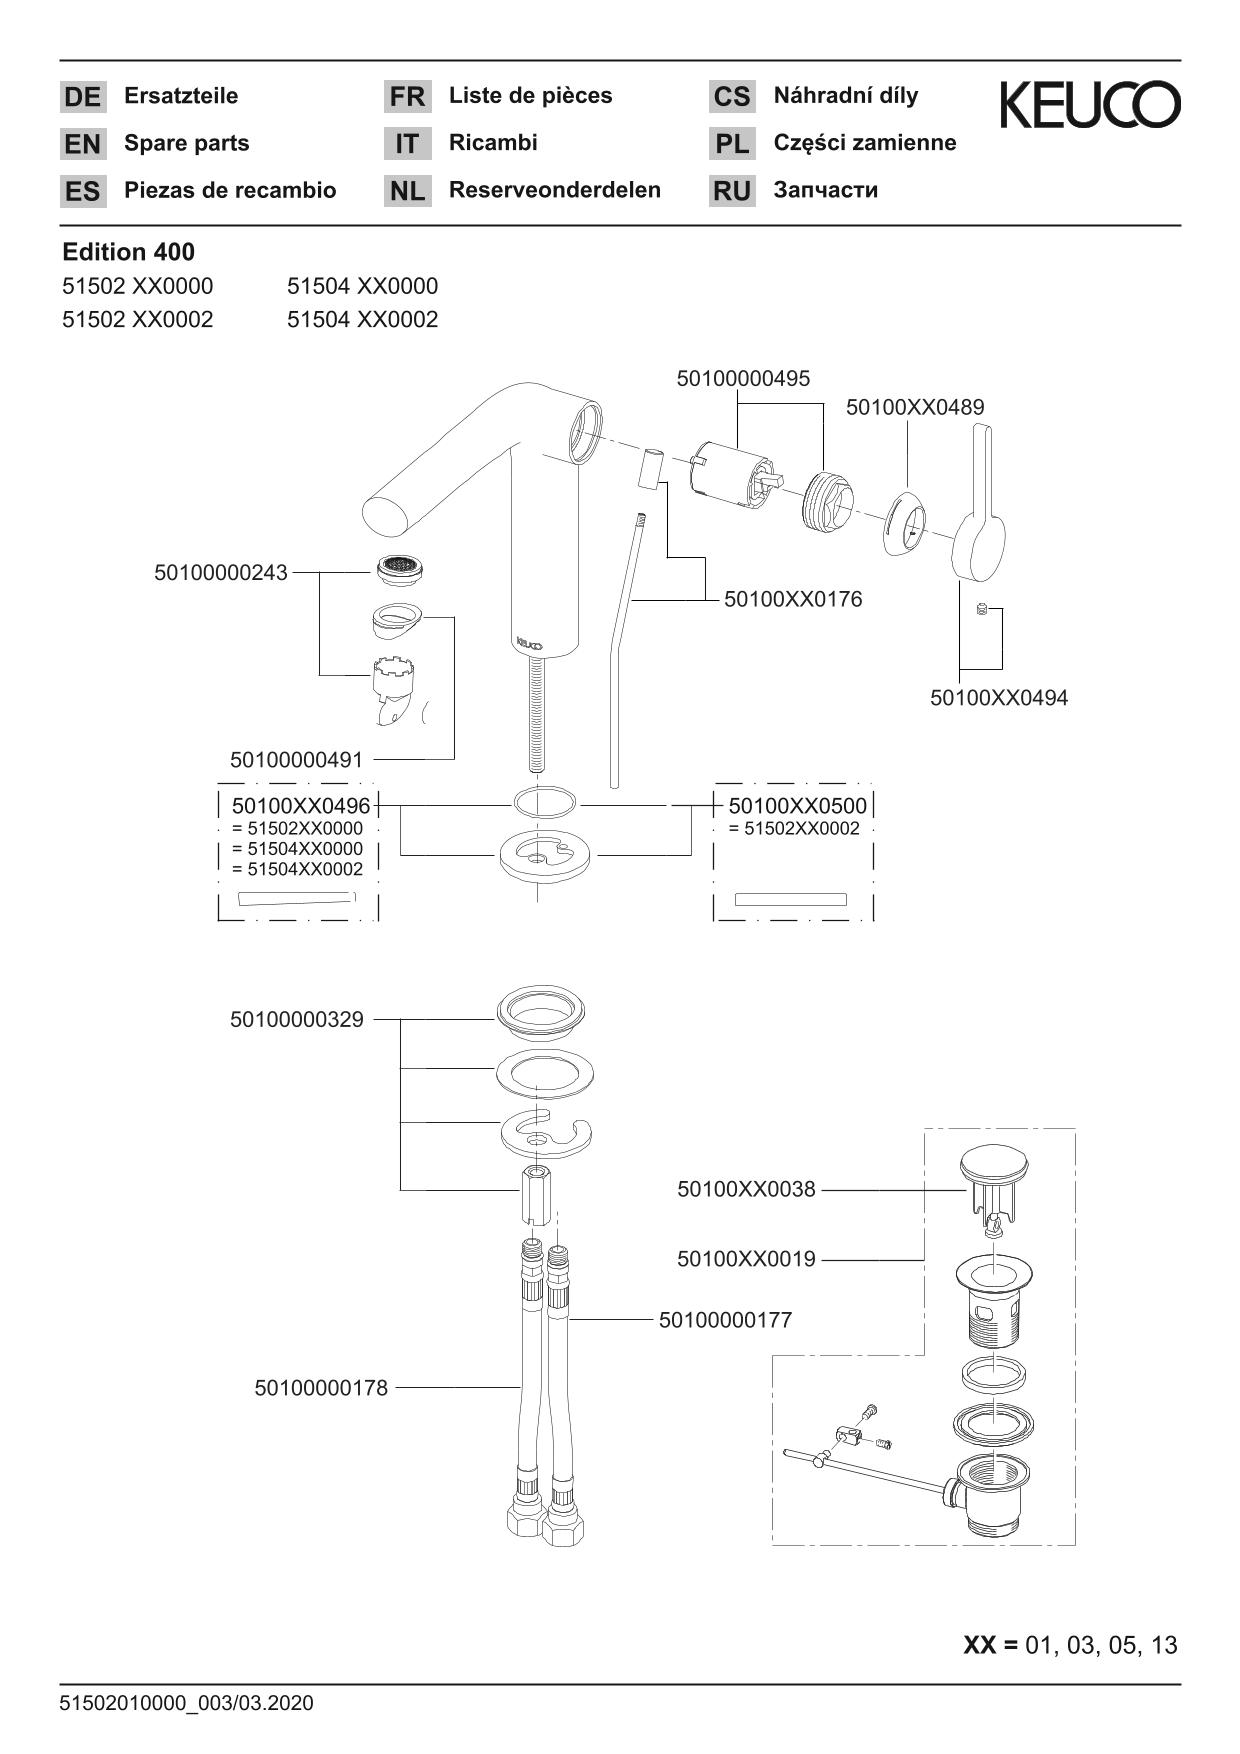 Edition 400 51504050002 Einhebel-Waschtischmischer 120 mit Zugstangen-Ablaufgarnitur Nickel gebürstet